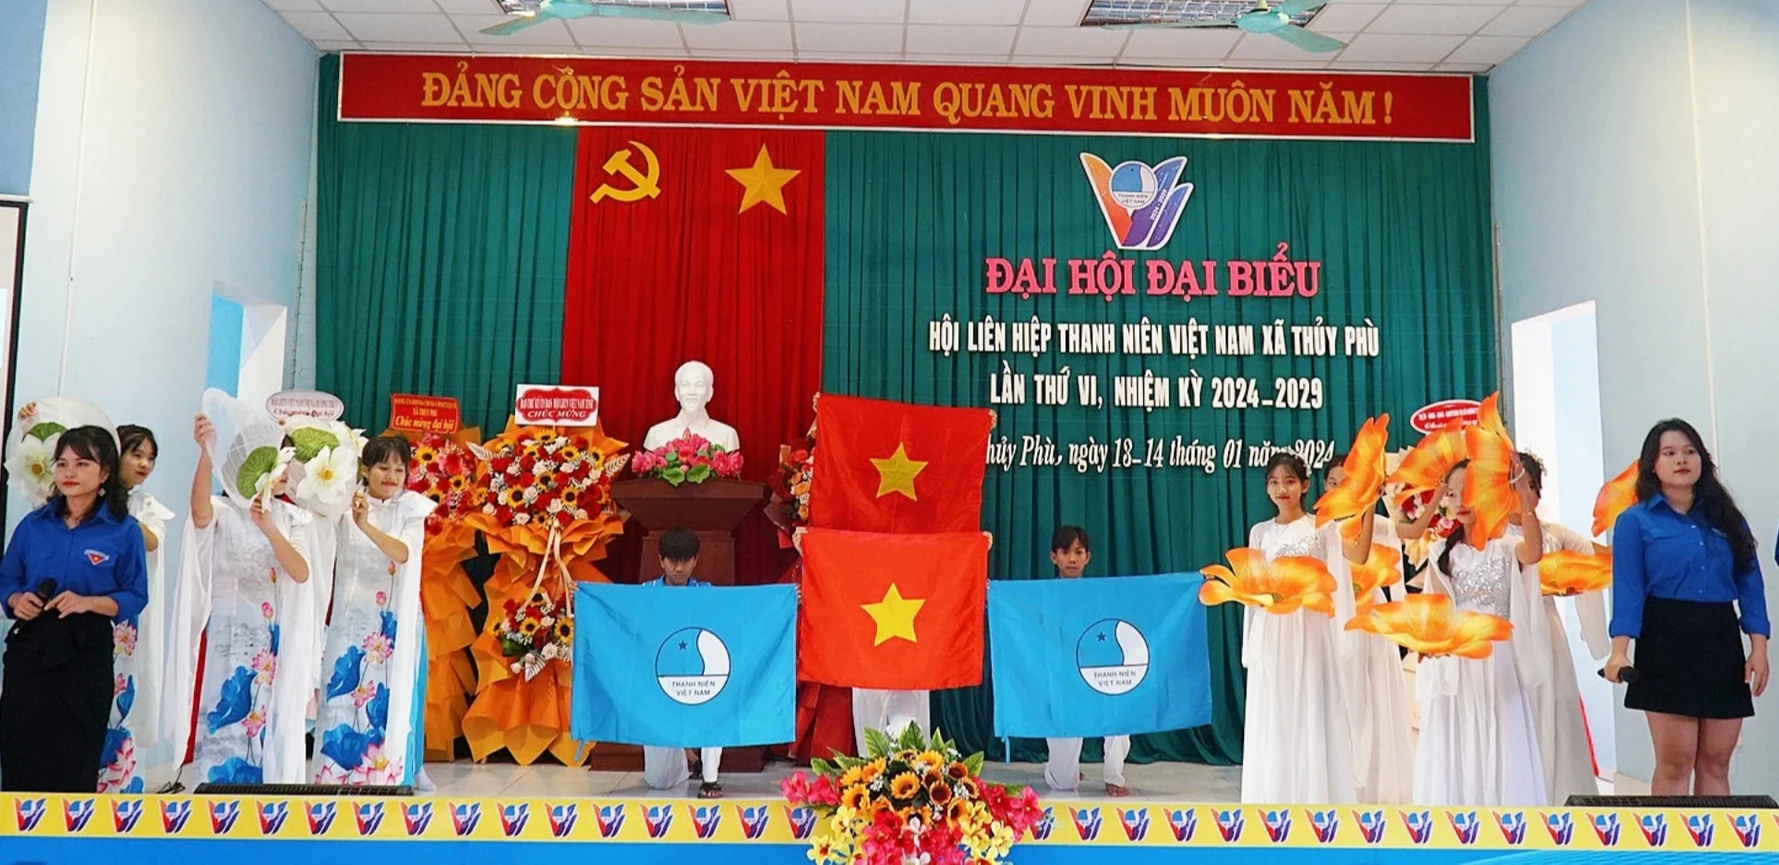 Tươi trẻ đại hội điểm thanh niên cấp xã tại Thừa Thiên - Huế- Ảnh 1.